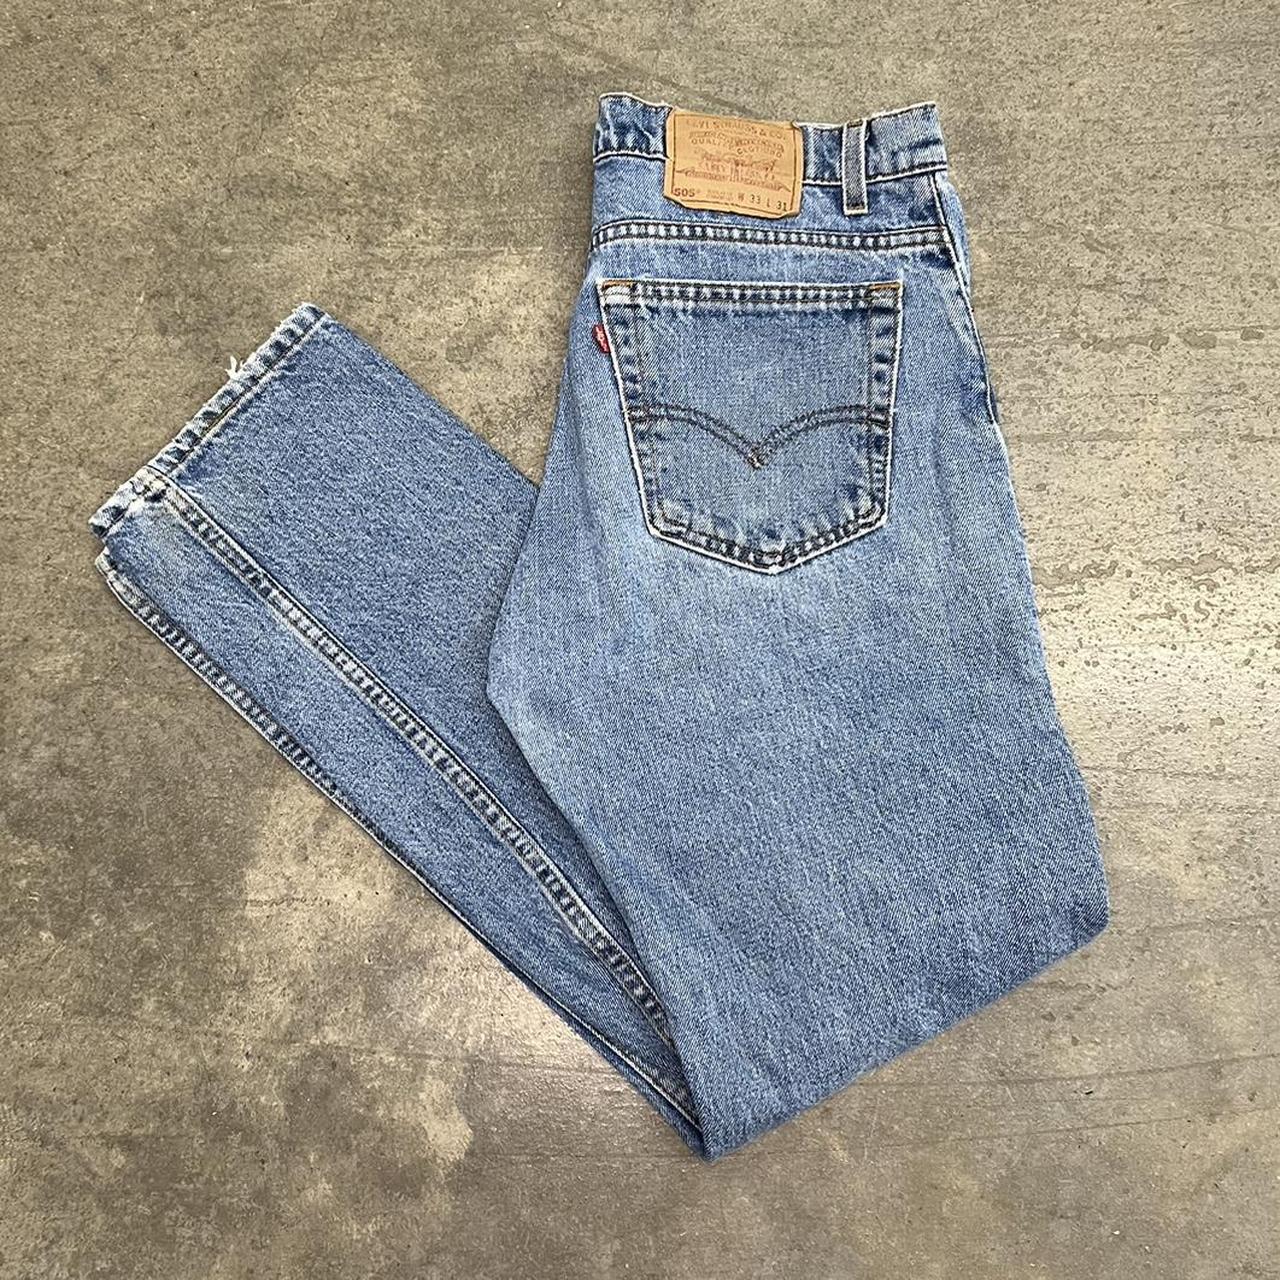 Levi's 505 Jeans Men's Size 33x31 Blue Pants Light... - Depop